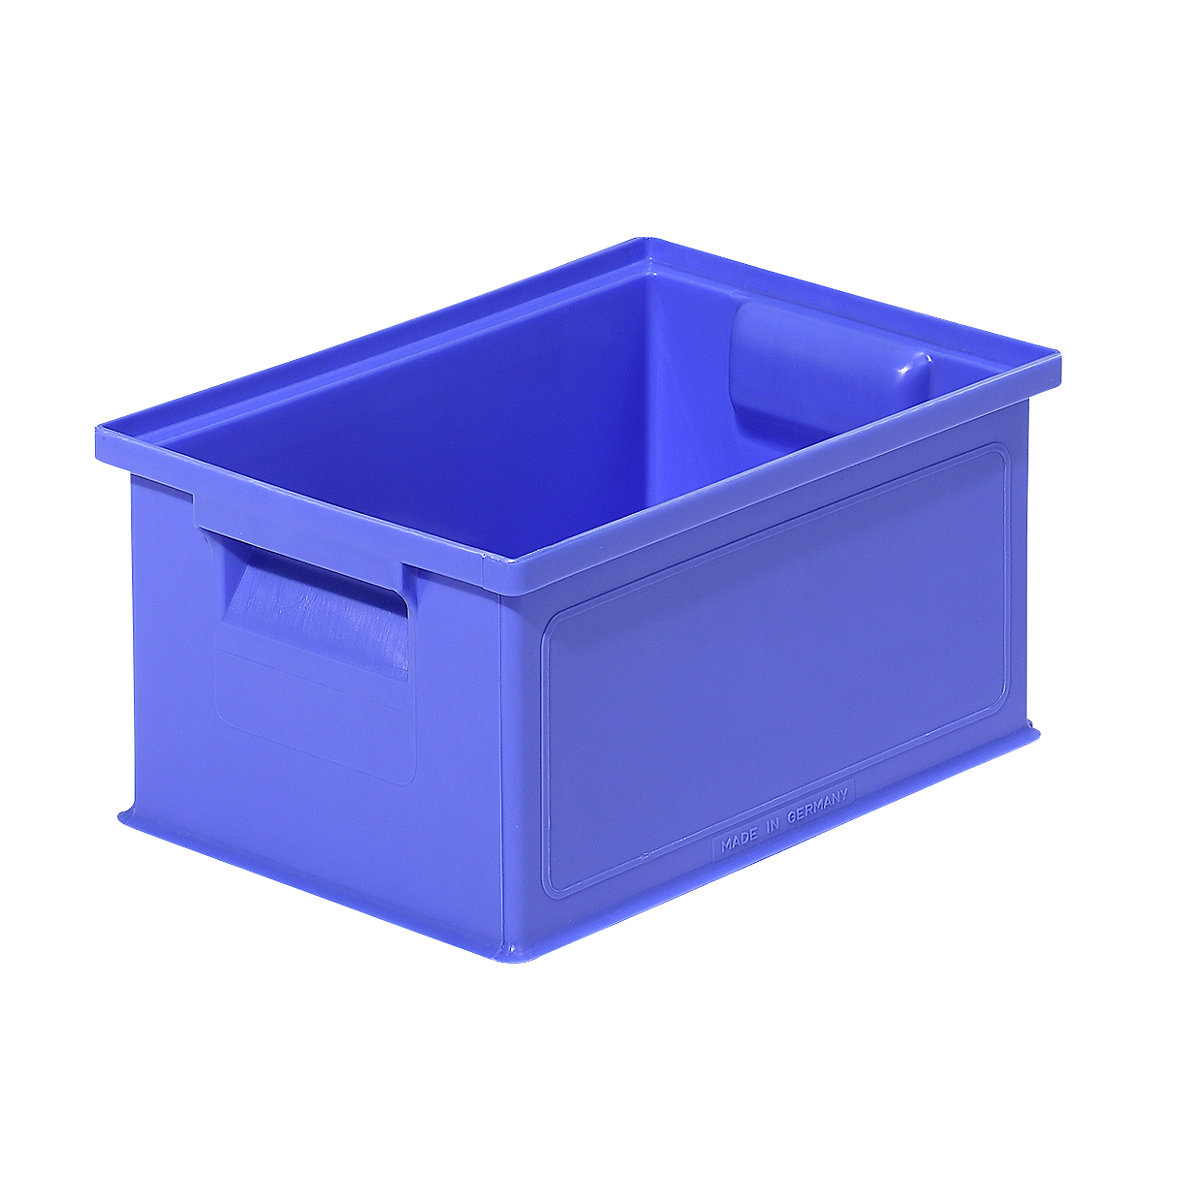 Caixa de transporte empilhável, CxLxA 310 x 210 x 145 mm, cor azul, embalagem com 20 unidades-3